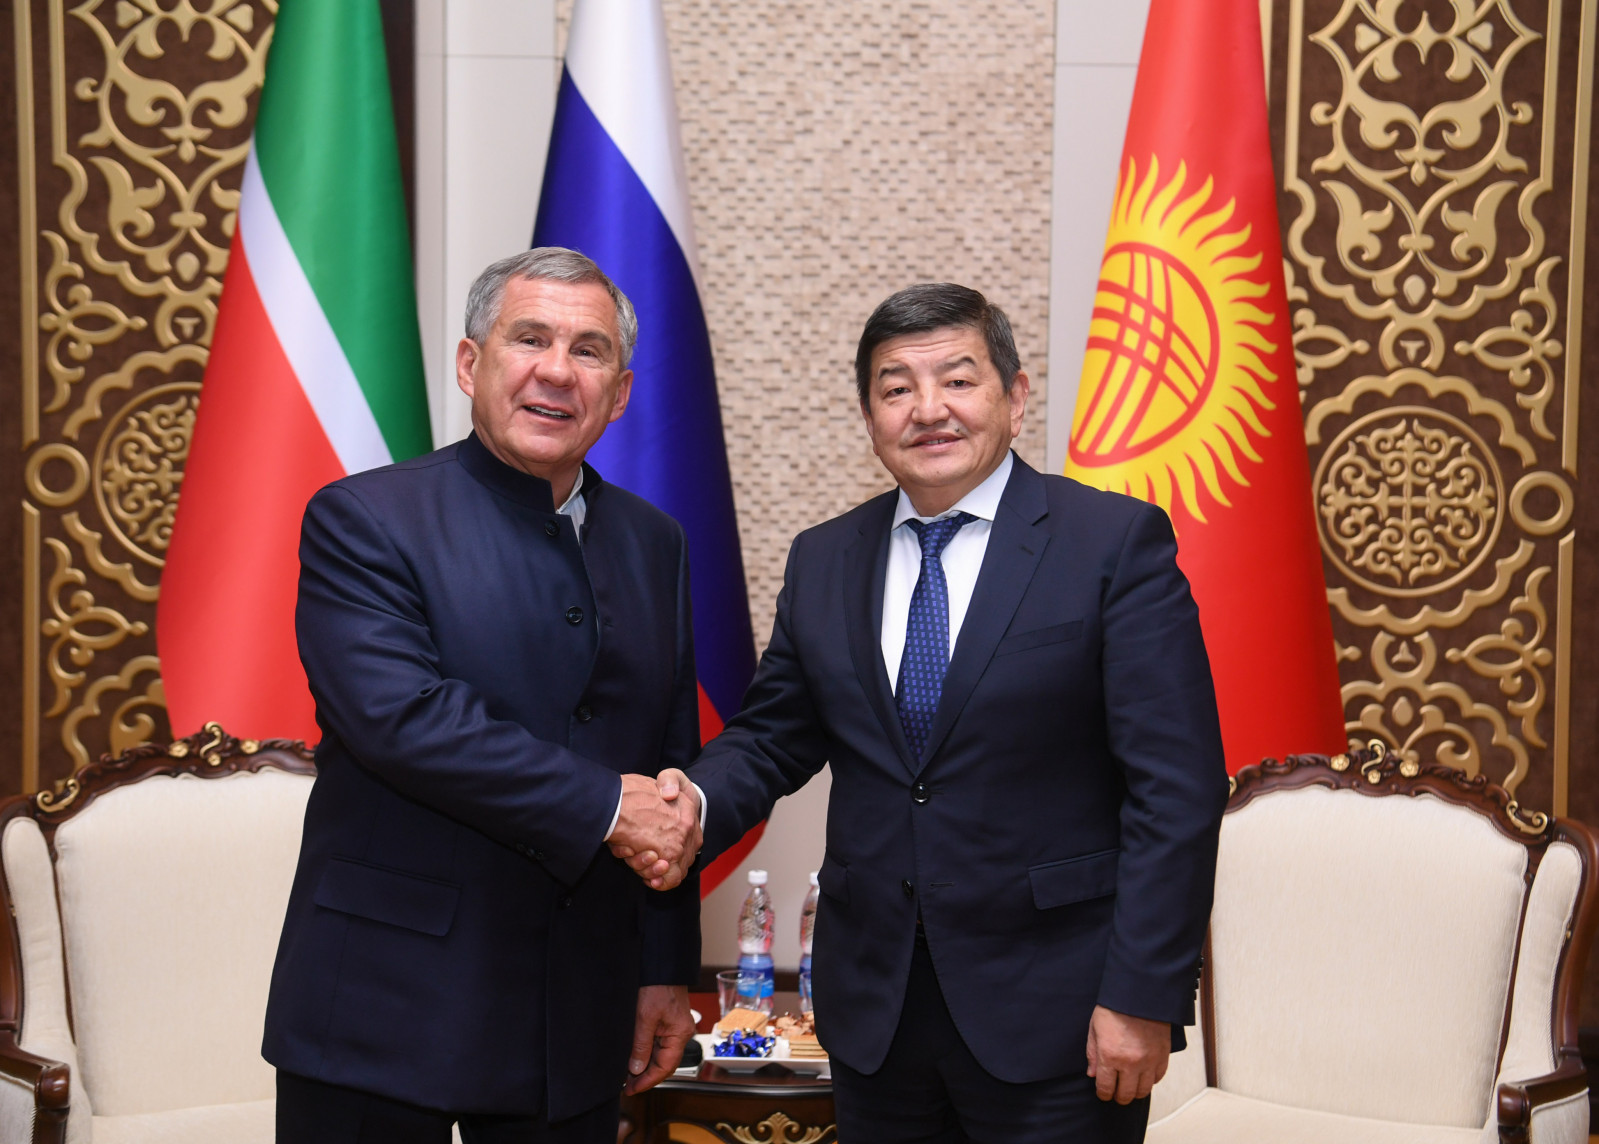 Акылбек Жапаров встретился с президентом Татарстана Рустамом Миннихановым